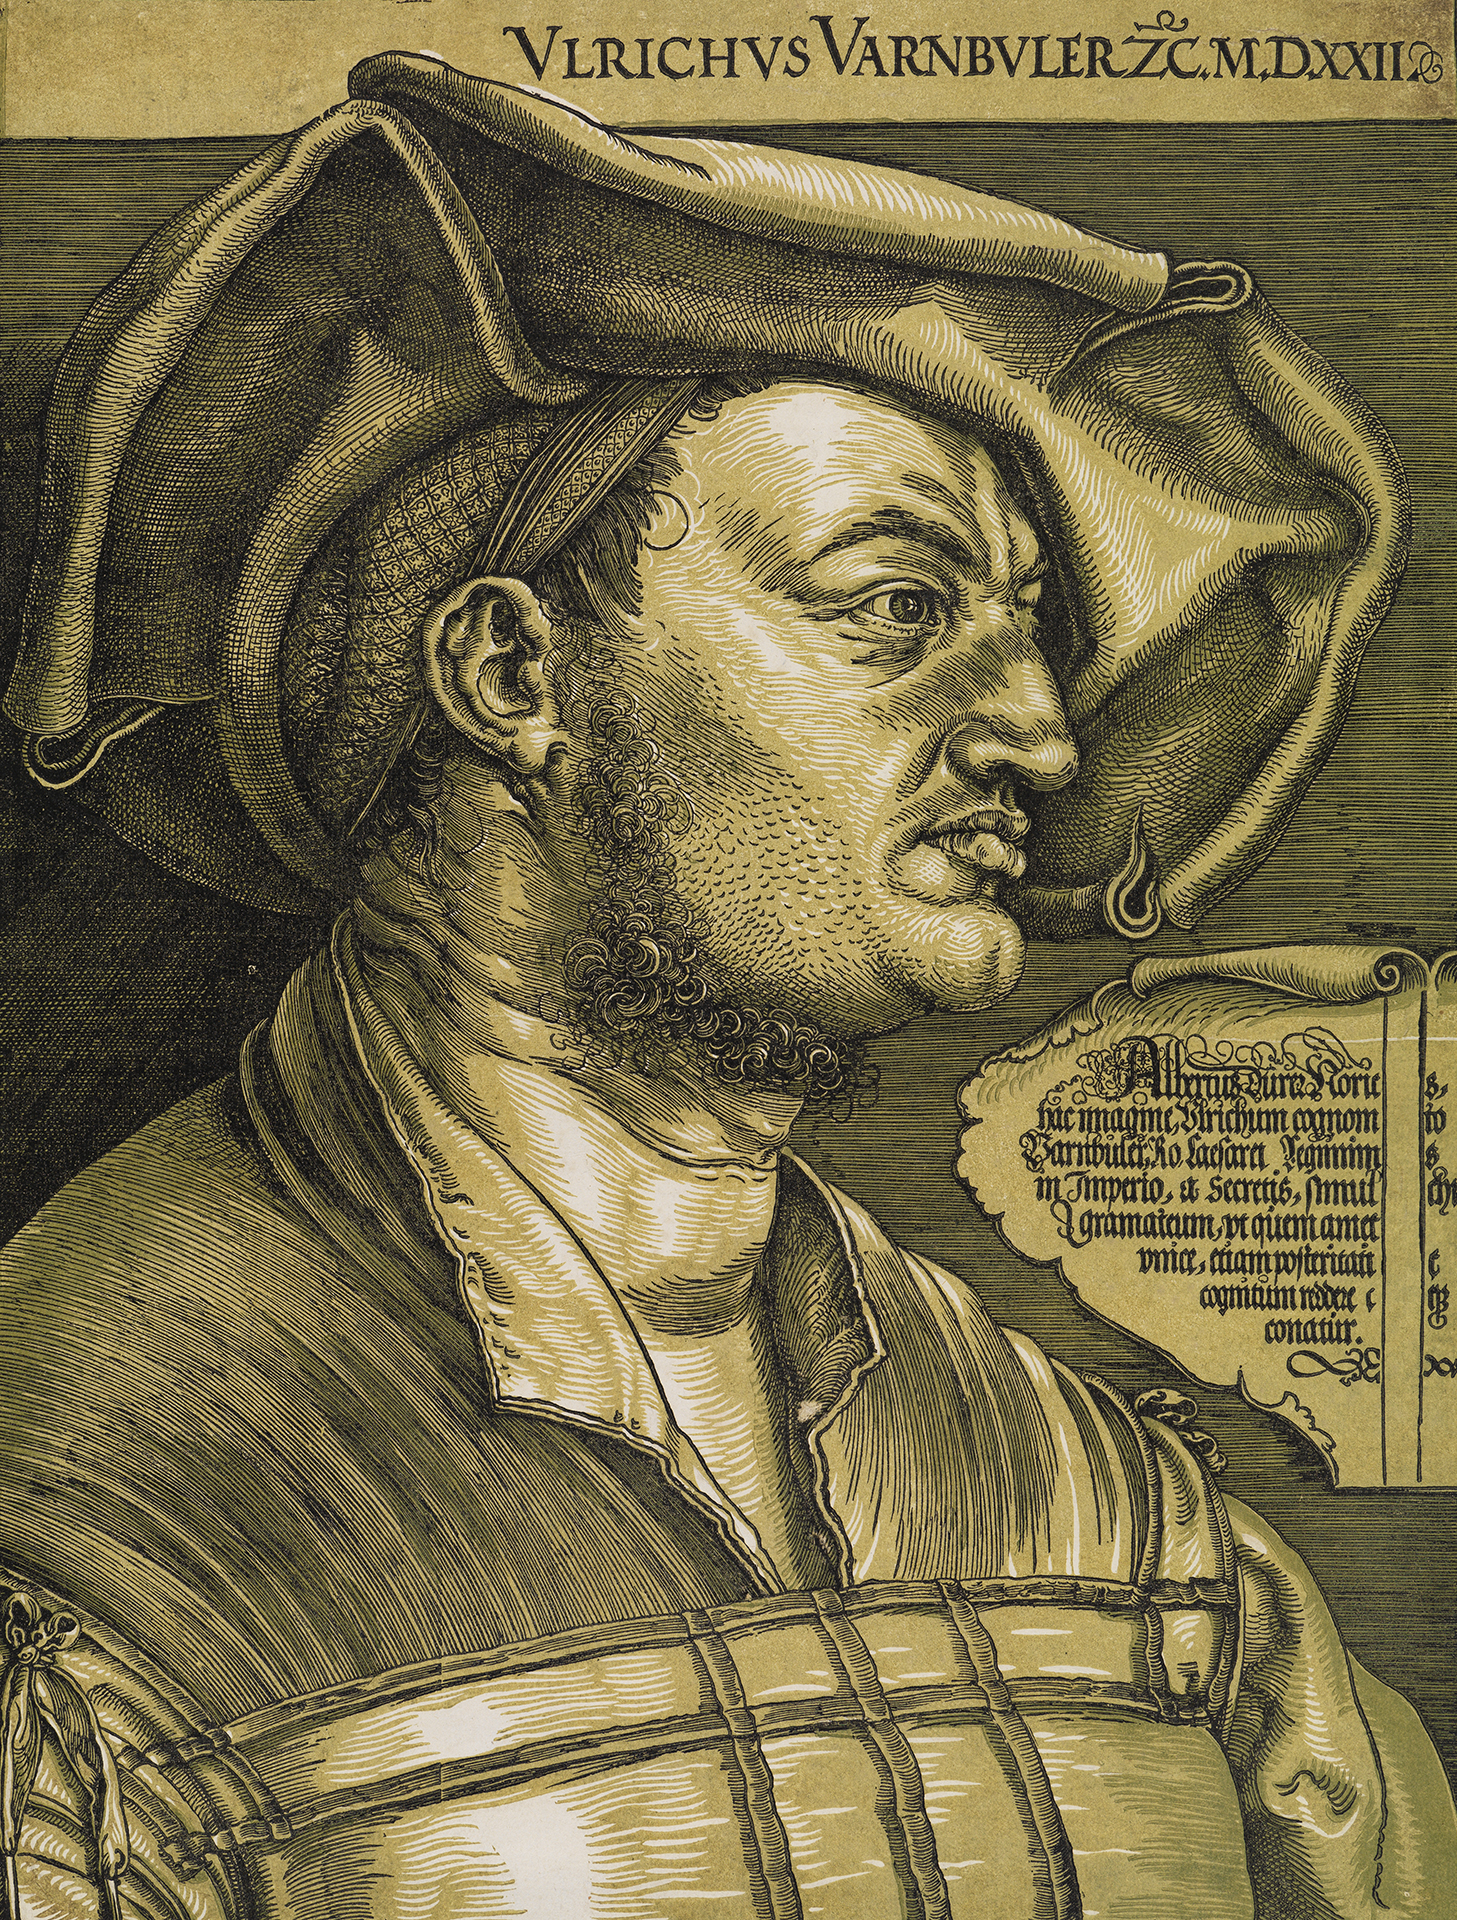 Mehrfarbiger Holzschnitt: Portrait von Ulrich Varnbüler. Mann mit markanten Gesichtszügen, ein Barett schräg auf dem Kopf, blickt zur Seite. Neben ihm eine Kartusche mit Inschrift.